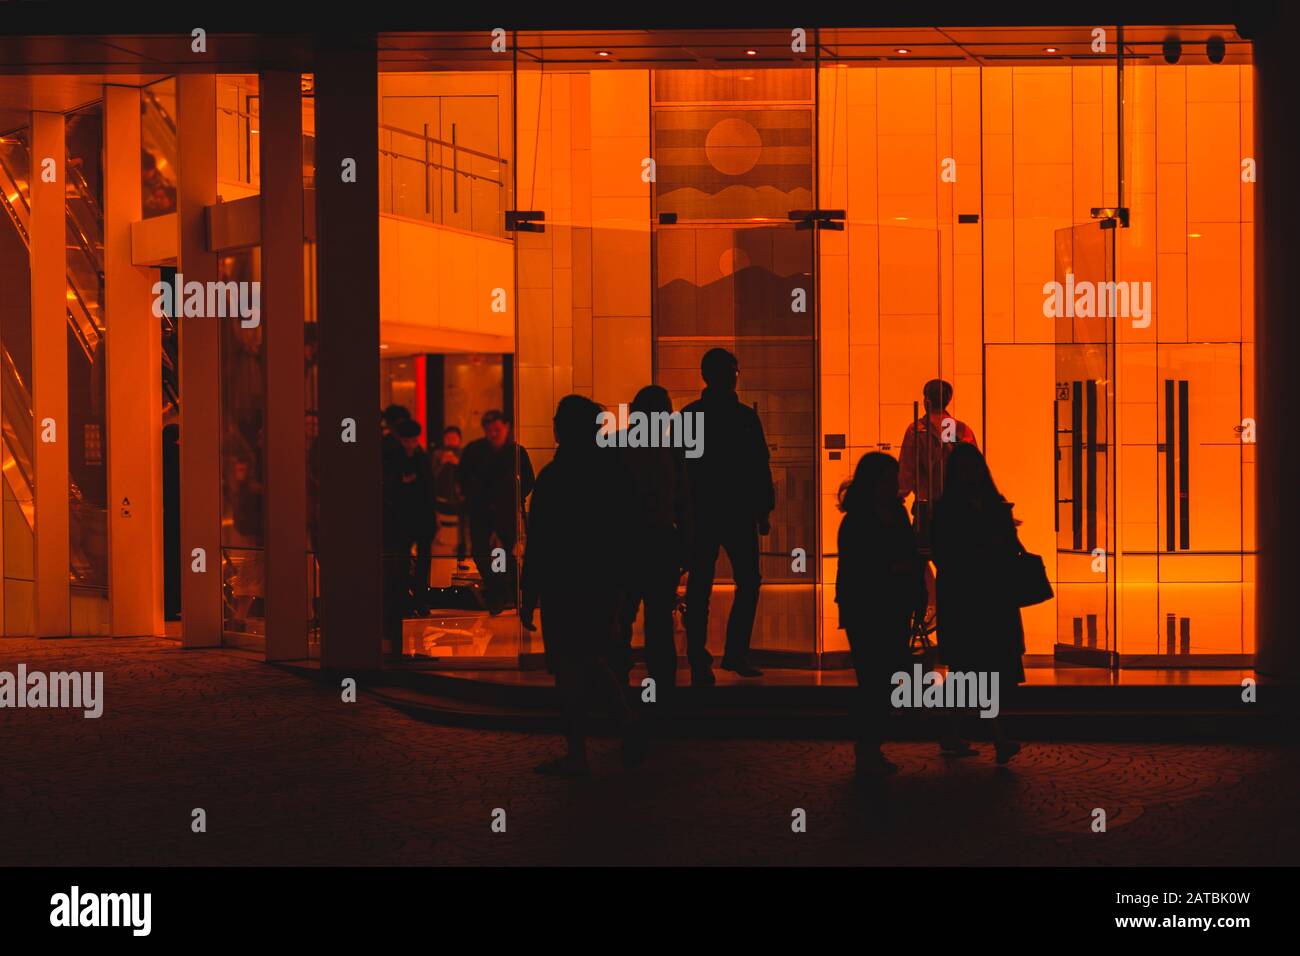 Menschen, die Bürogebäude verlassen, Silhouetten von Menschen - Stockfoto